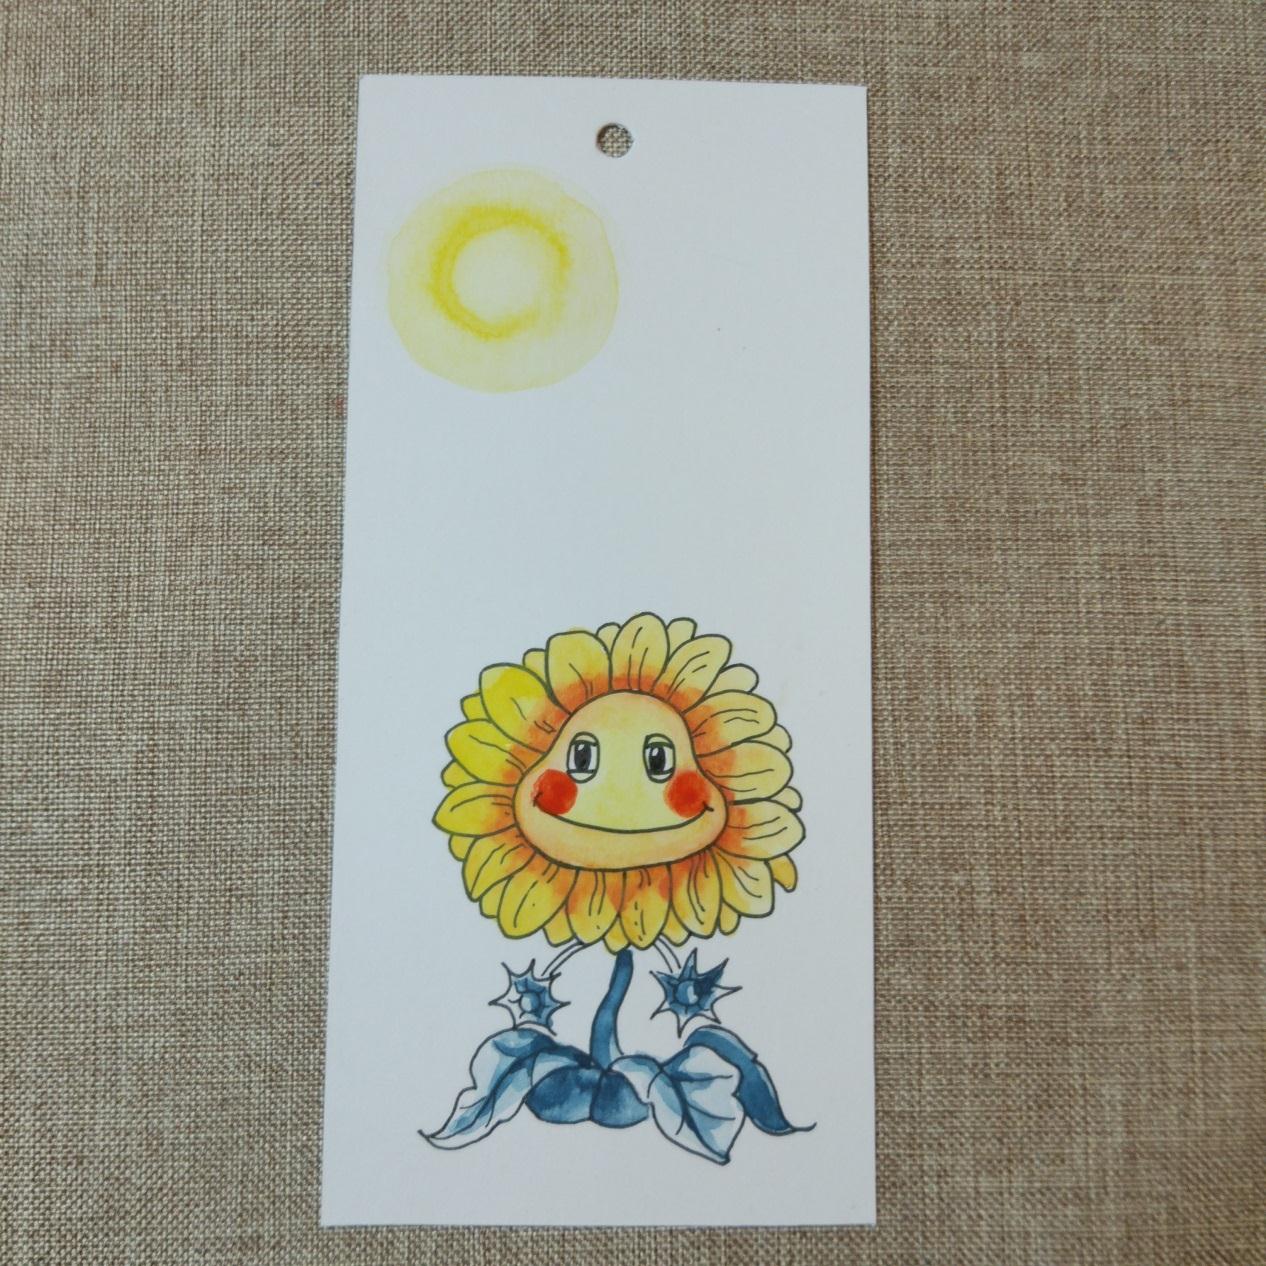 教你制作简单的水彩画书签 可爱花卉图案向日葵的画法